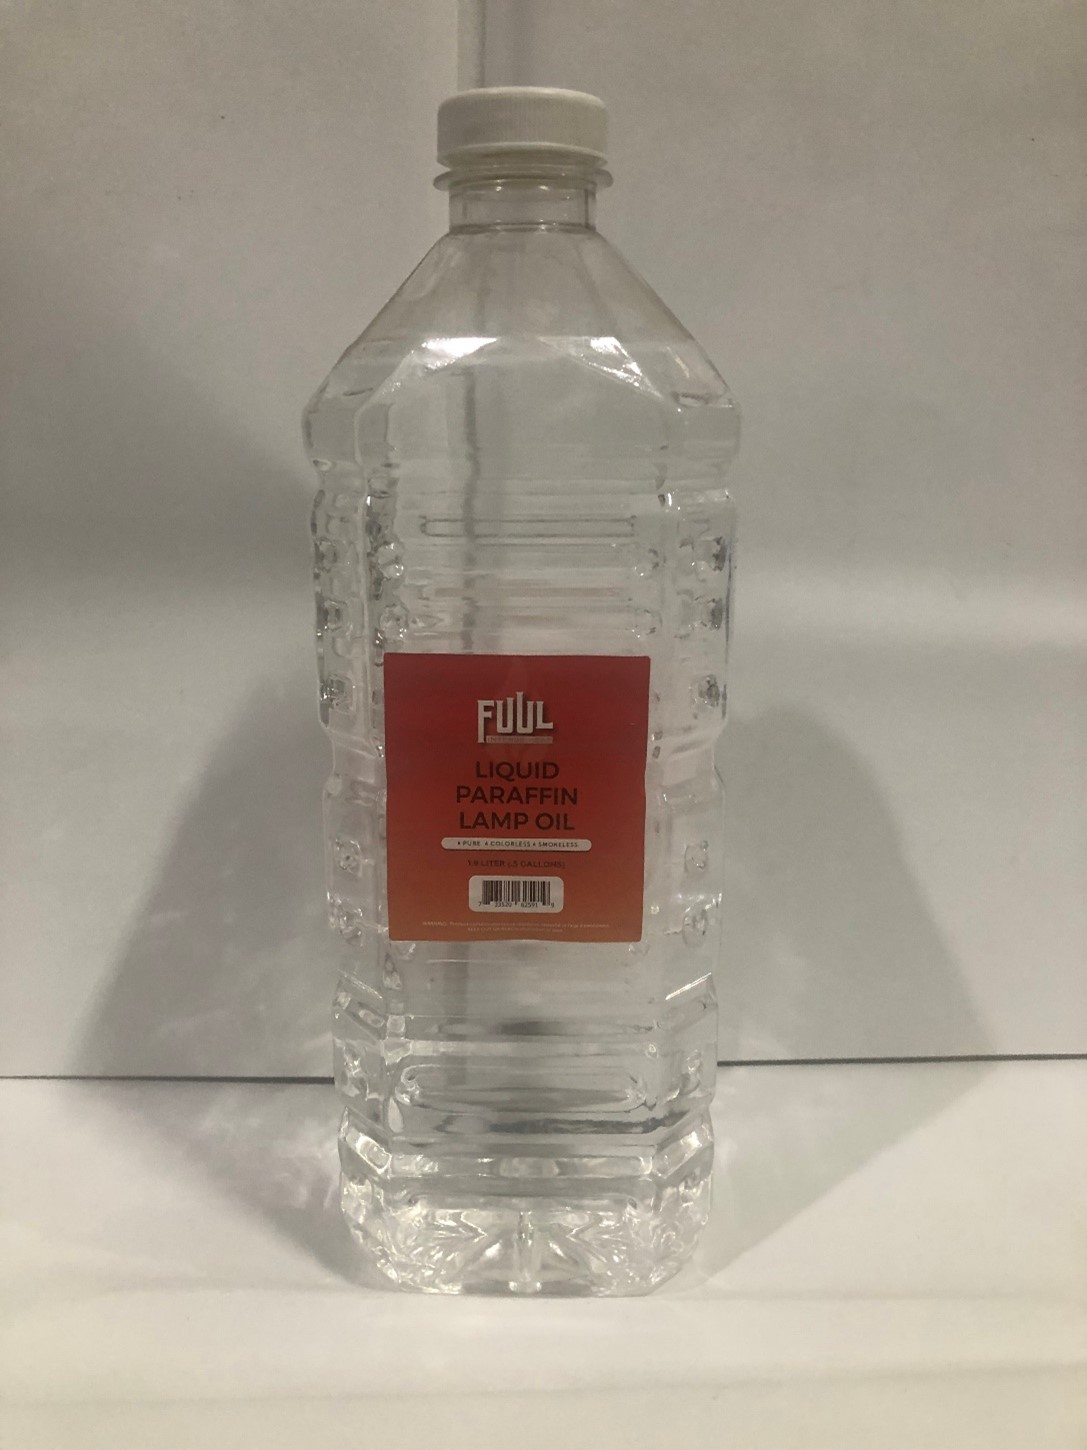 Recalled FUUL 1.9L Pure Liquid Paraffin Lamp Oil